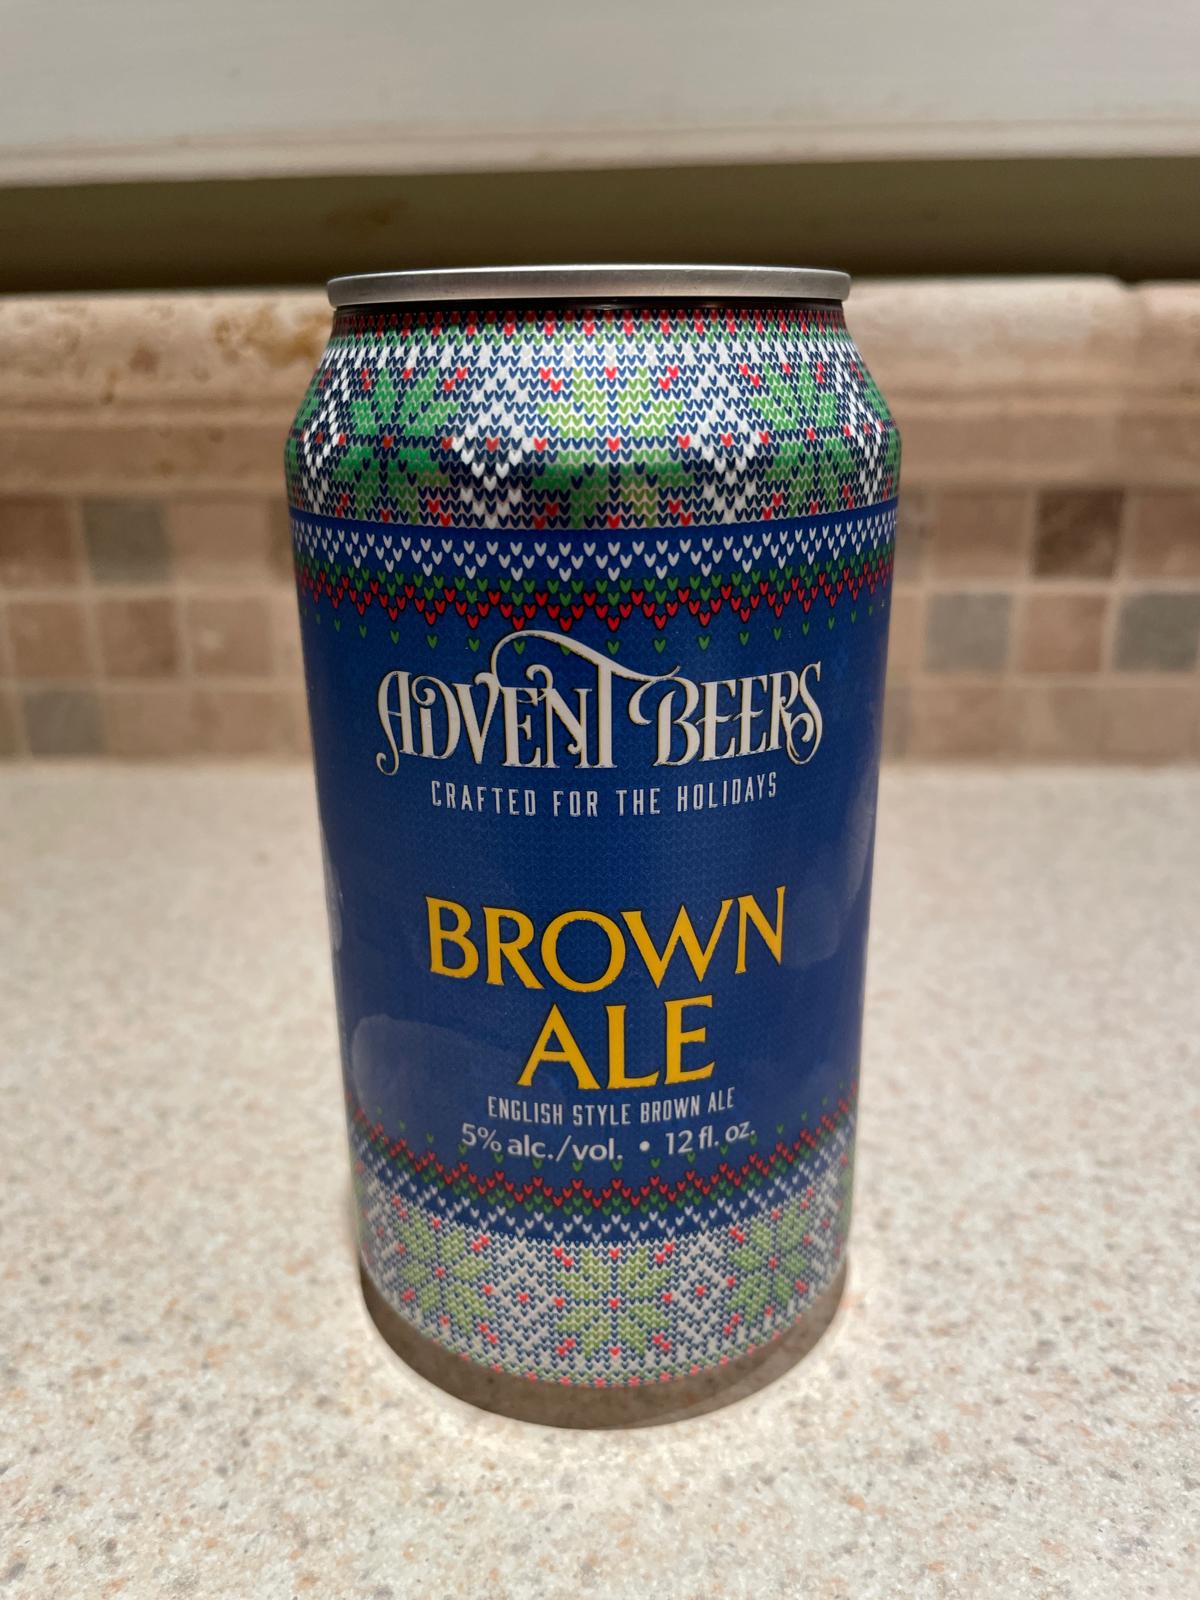 Advent Beers Brown Ale